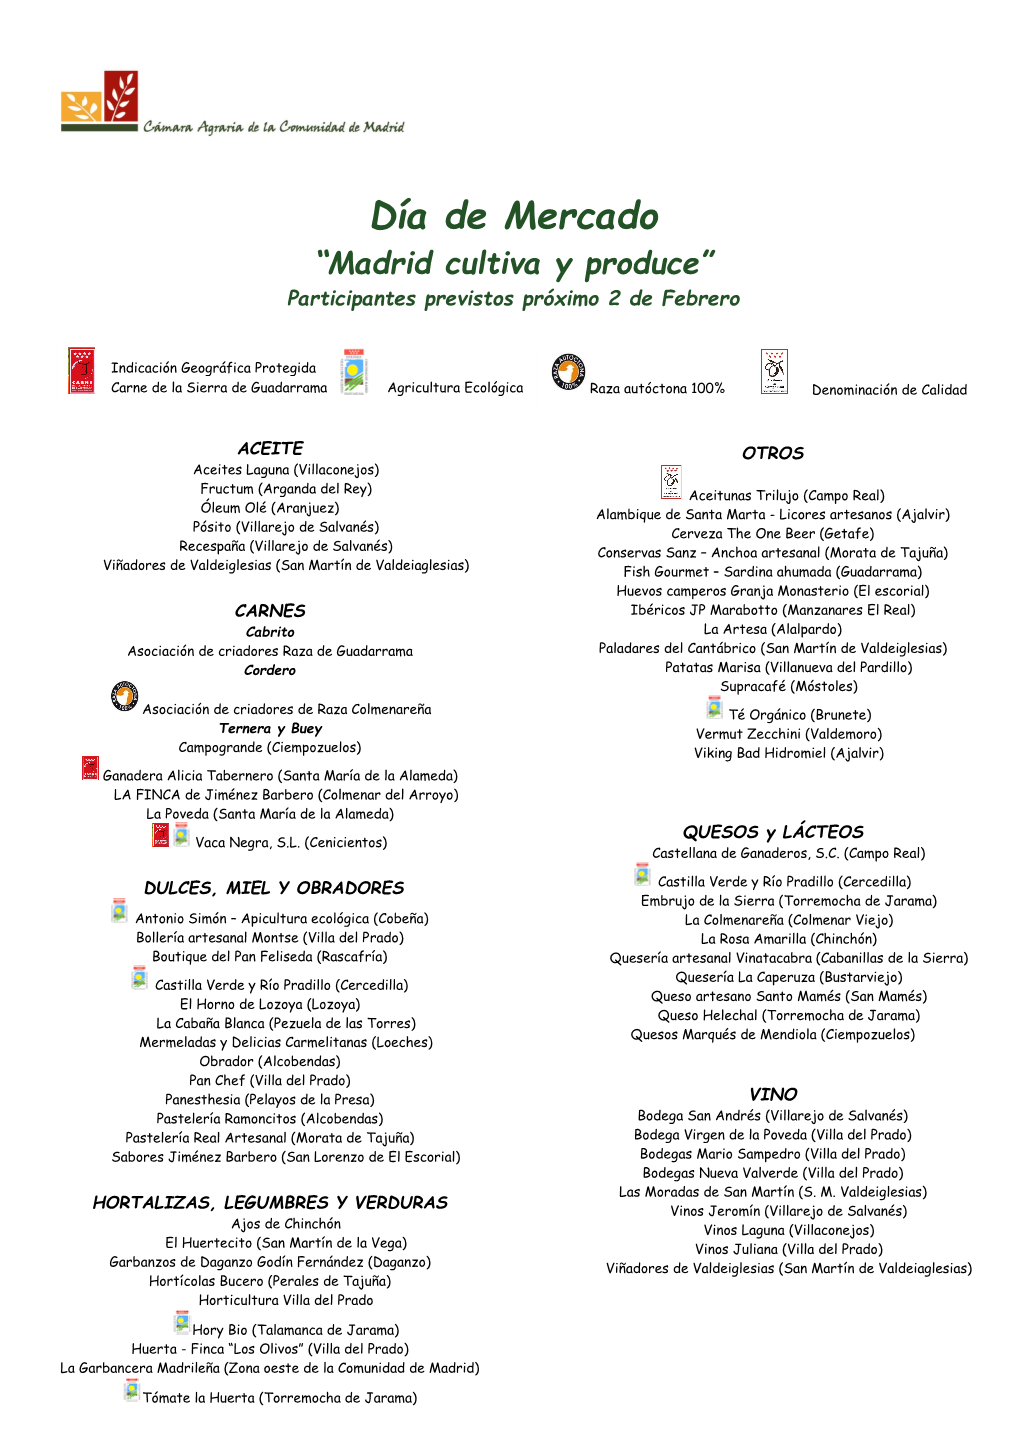 Día De Mercado “Madrid Cultiva Y Produce” Participantes Previstos Próximo 2 De Febrero